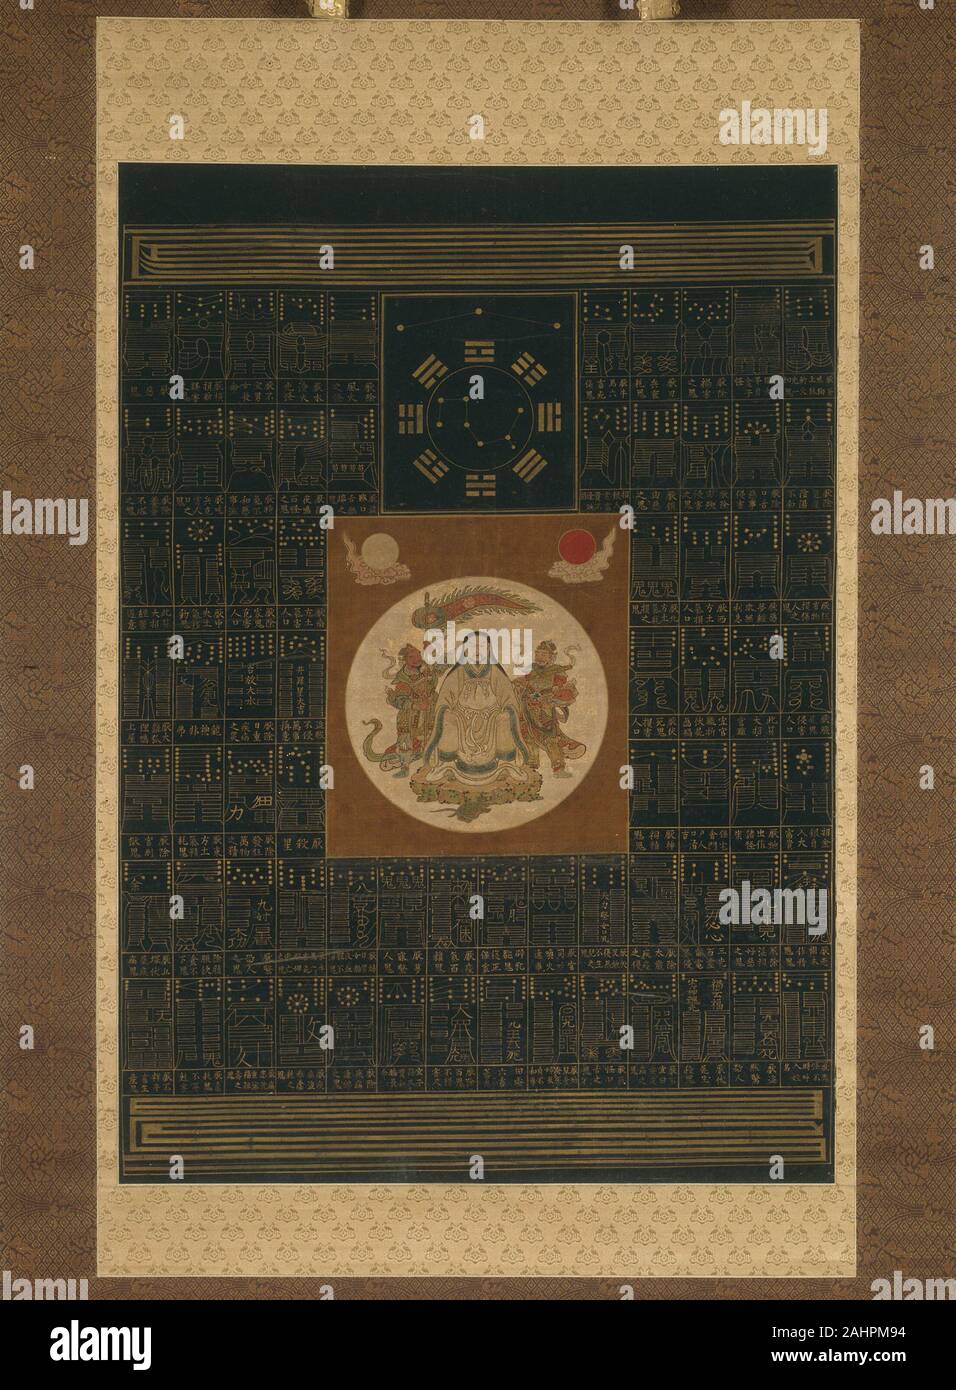 Zhenwu avec les huit trigrammes, le balancier du Nord, et les talismans. 1601-1800. La Chine. Défilement pendaison ; encre, couleurs, et d'or sur soie Banque D'Images